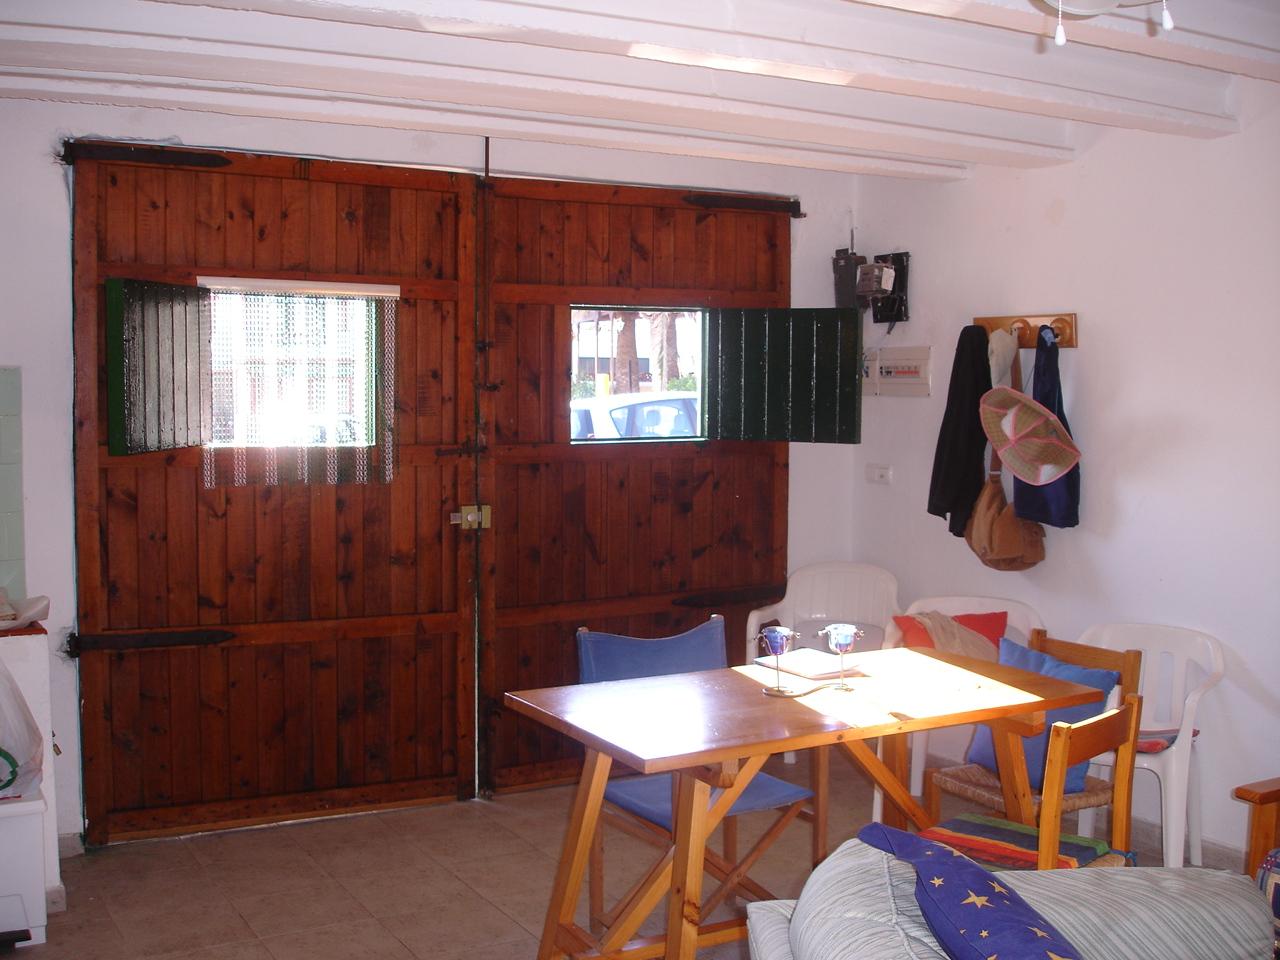 [Menorca+Inside+Living+Room.JPG]